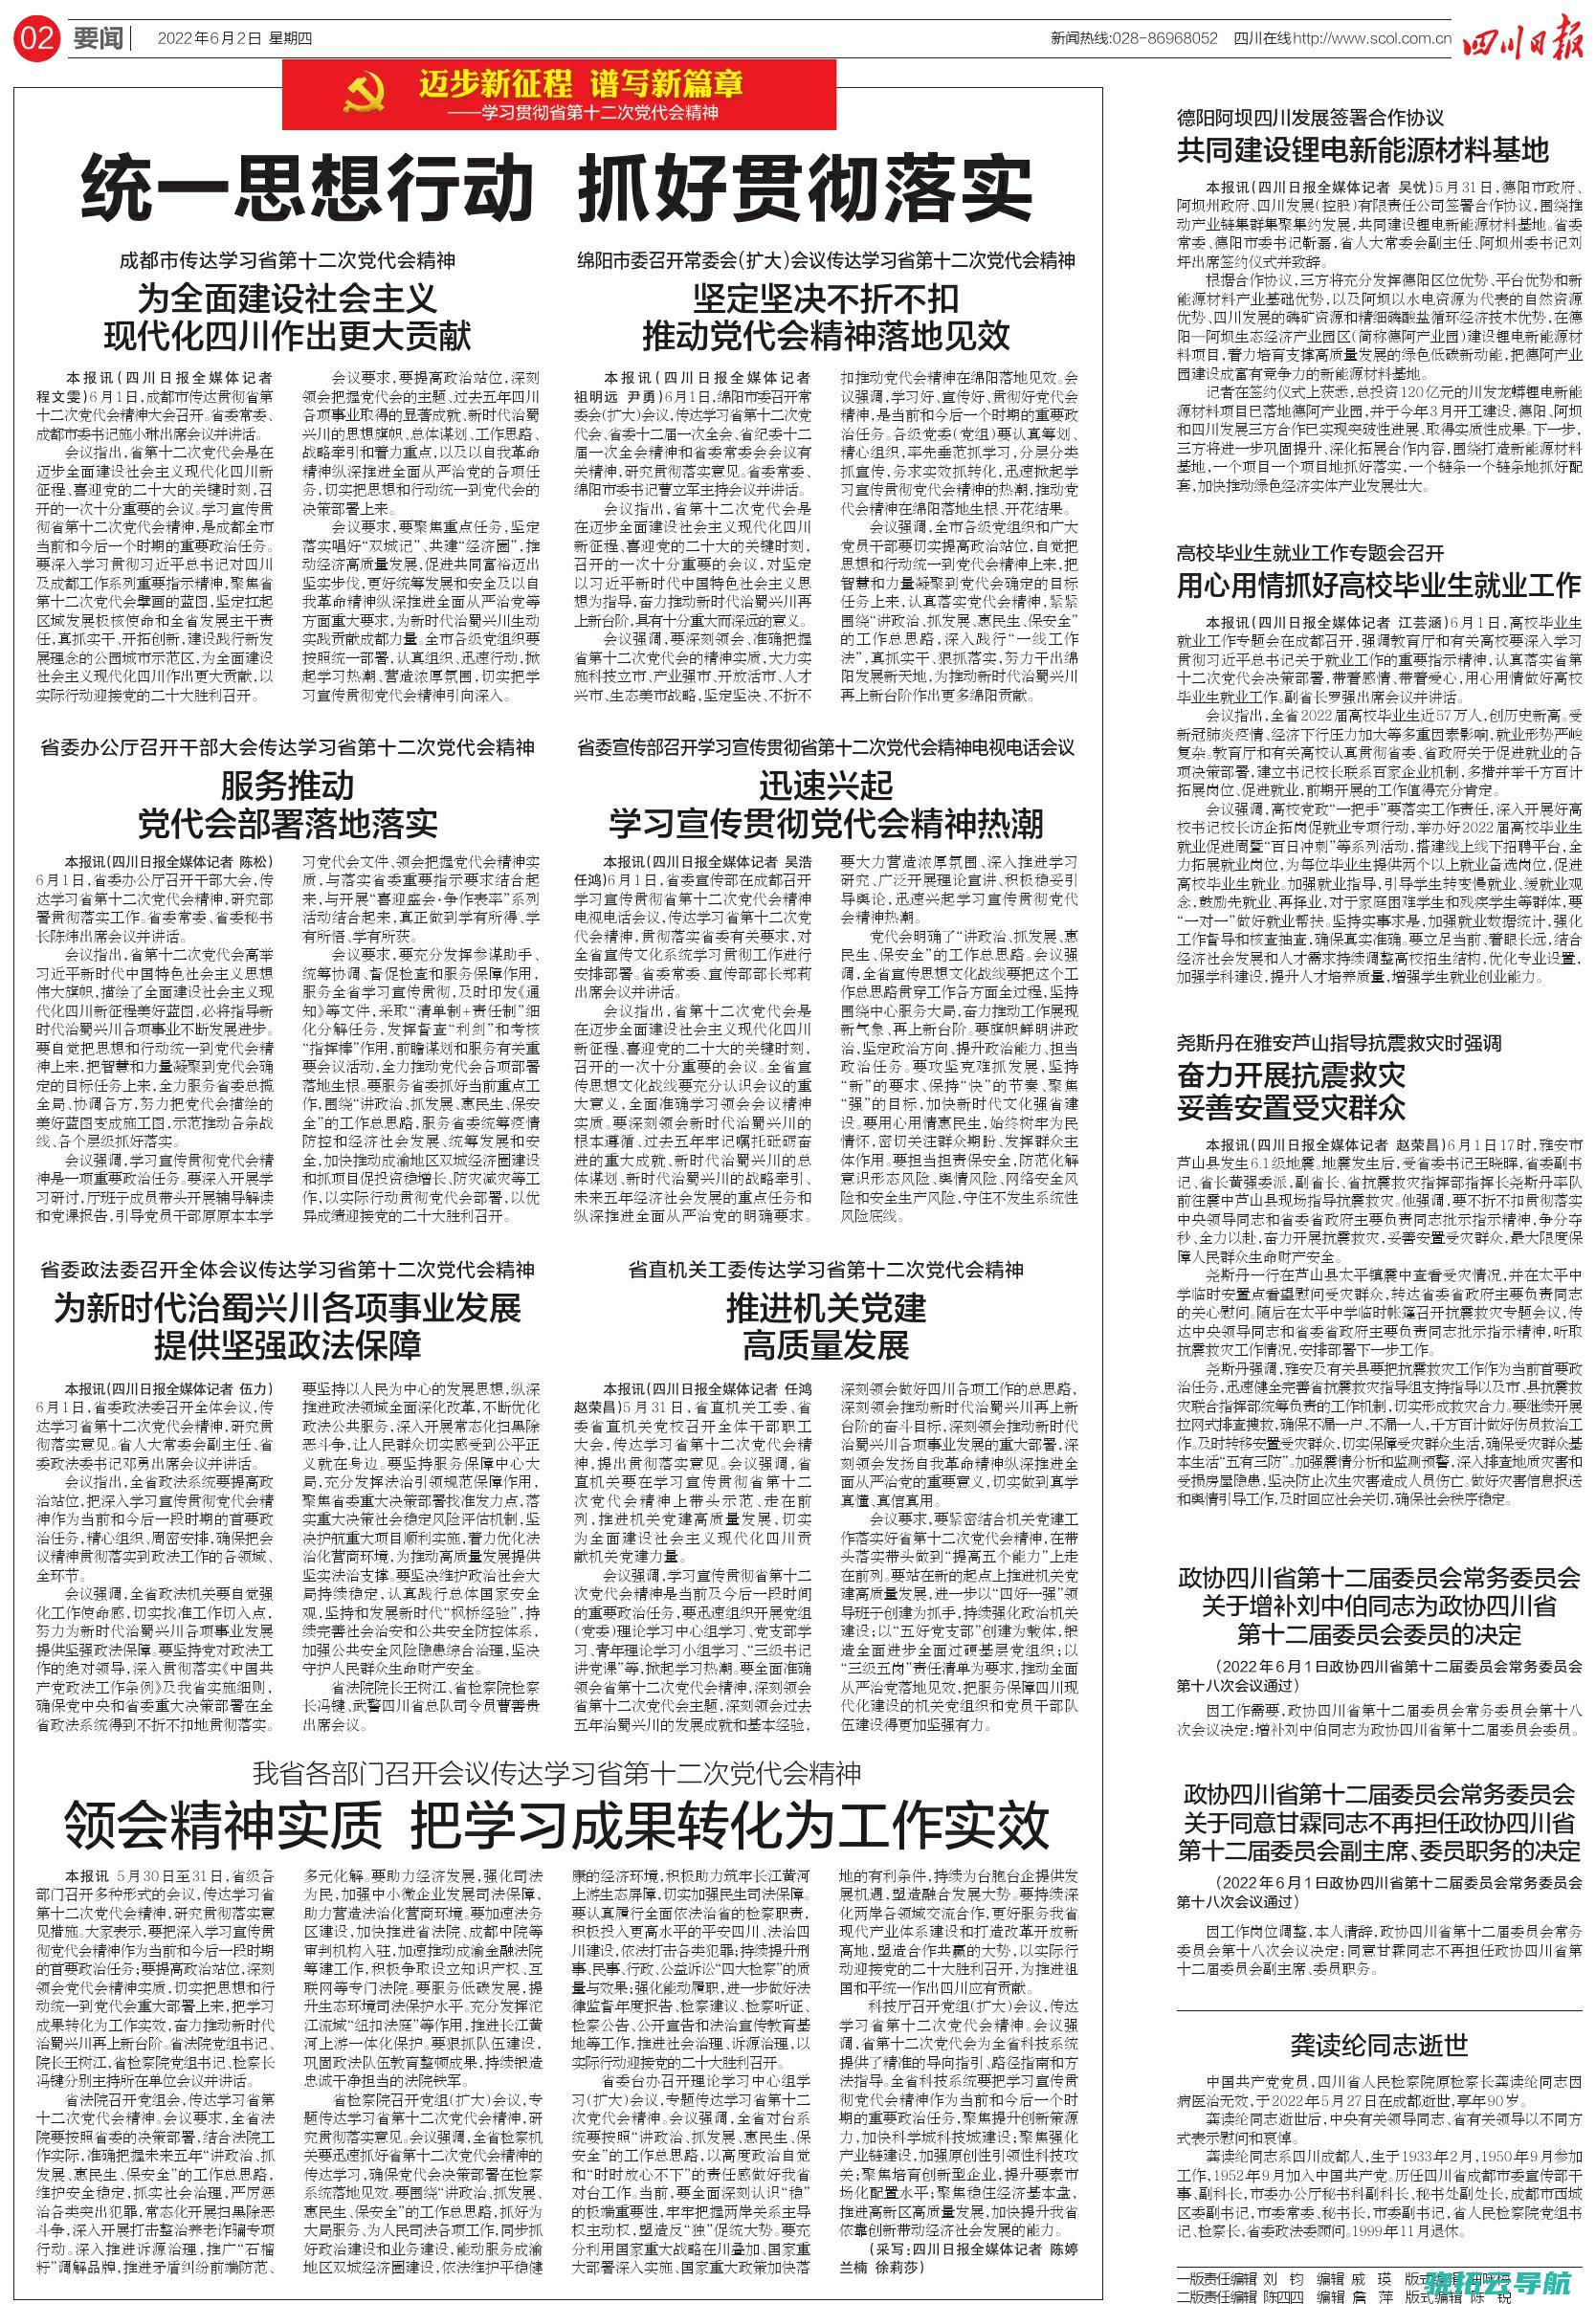 四川省政协原主席李崇禧一审被判处有期徒刑十二年